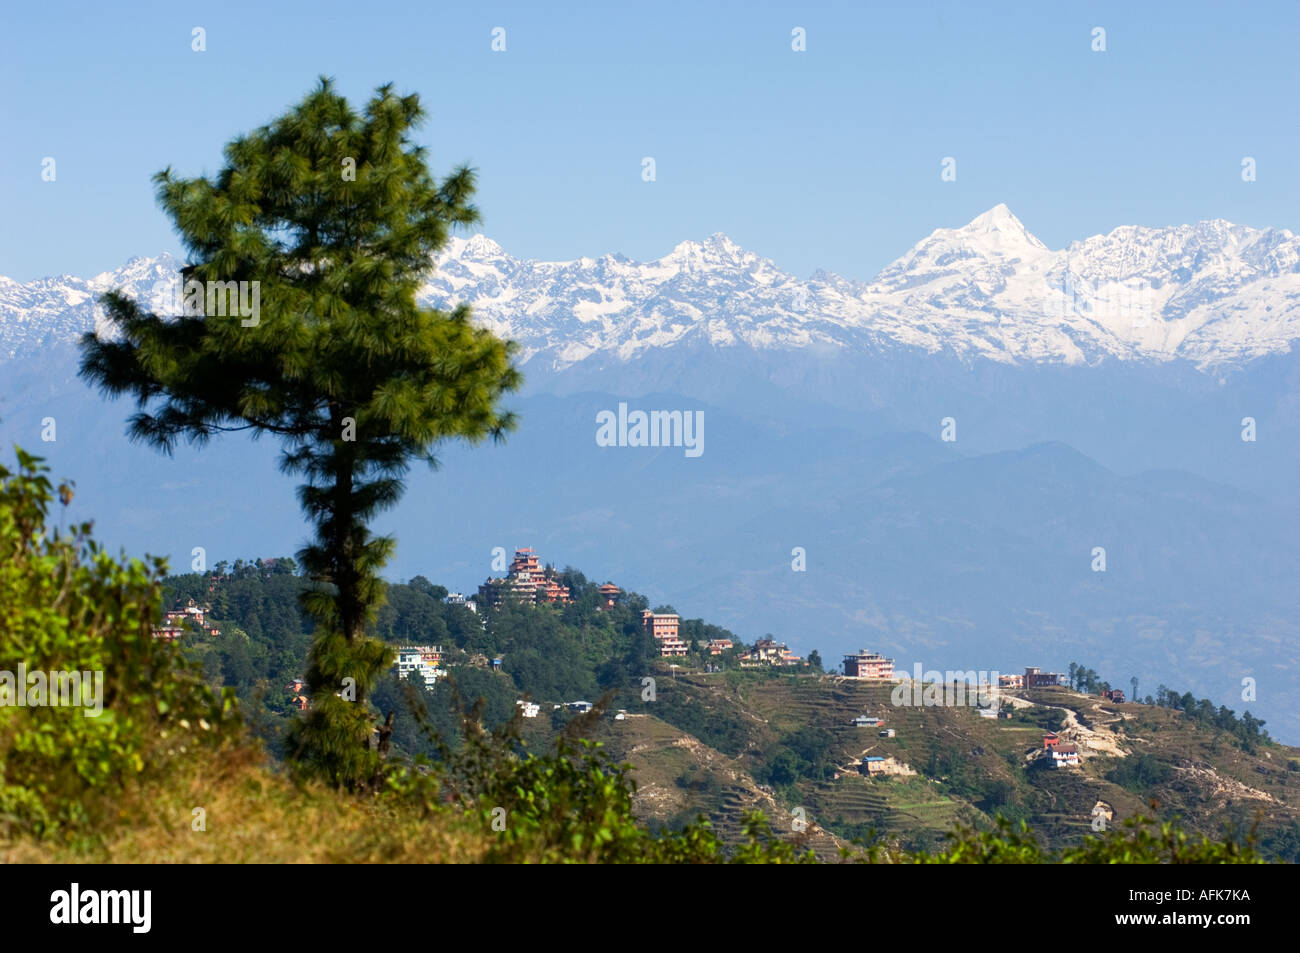 NAGARKOT HIMALAYA Mountain Resort chaîne de collines vallée de Katmandou vale dale glen Népal Katmandou Asie dell gamme anapurna Banque D'Images